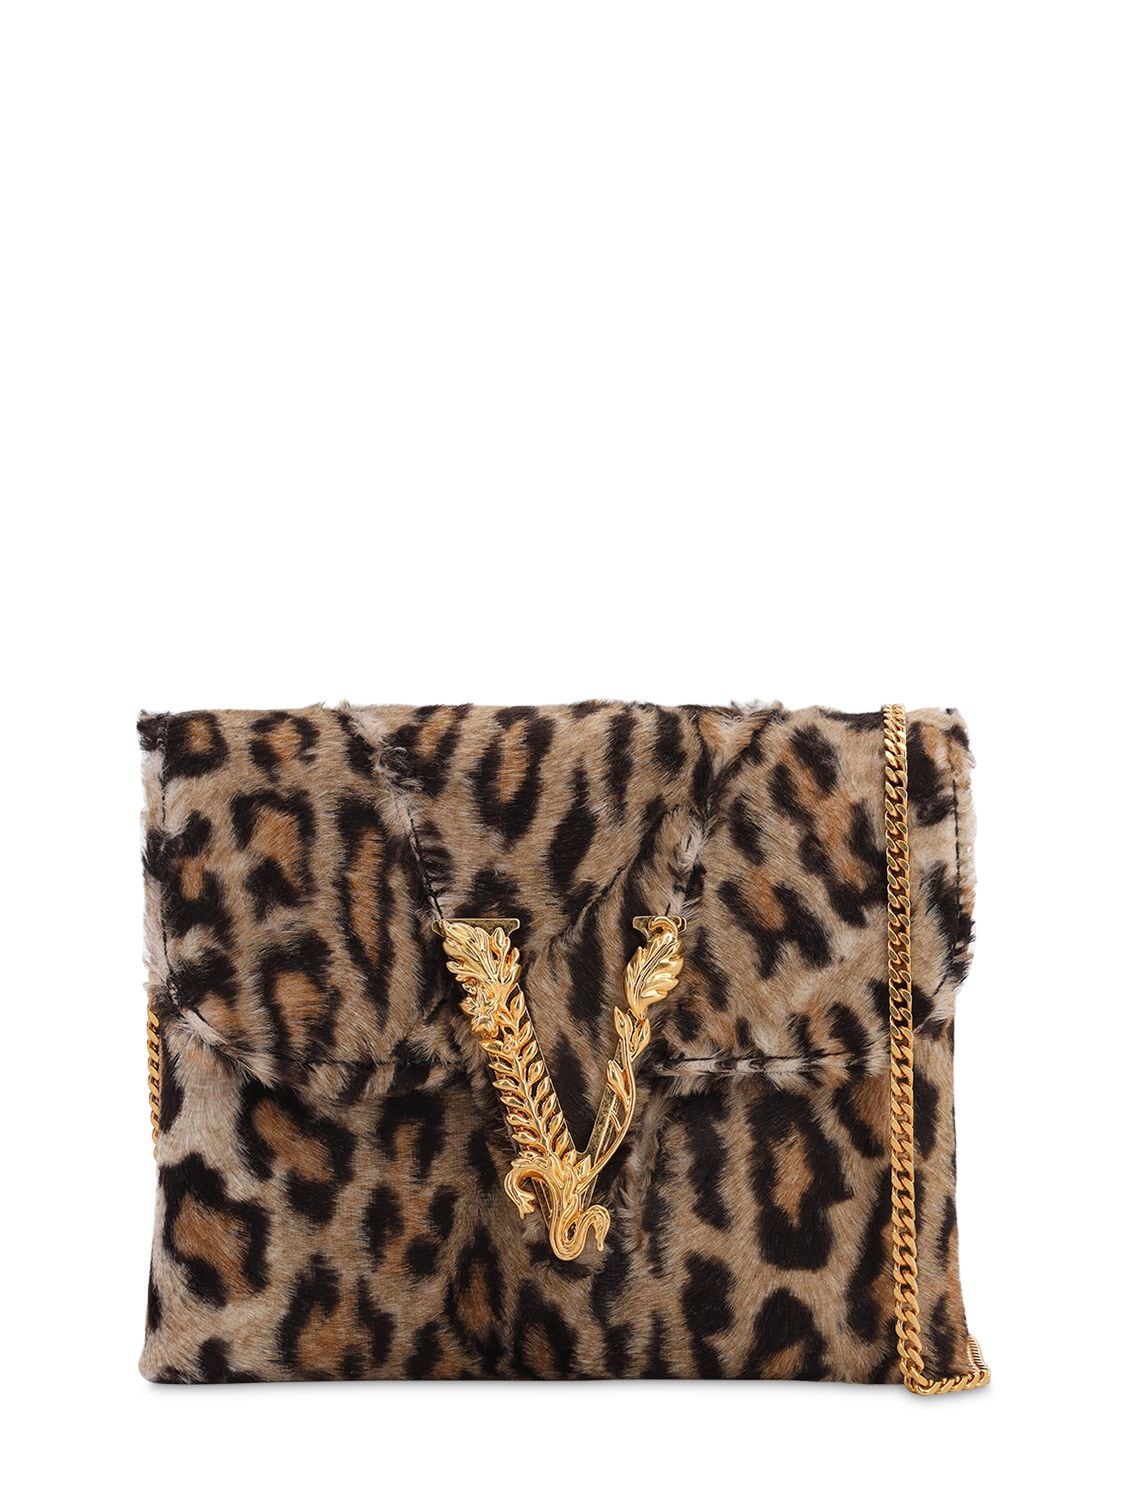 Versace Leopard Printed Shoulder Bag